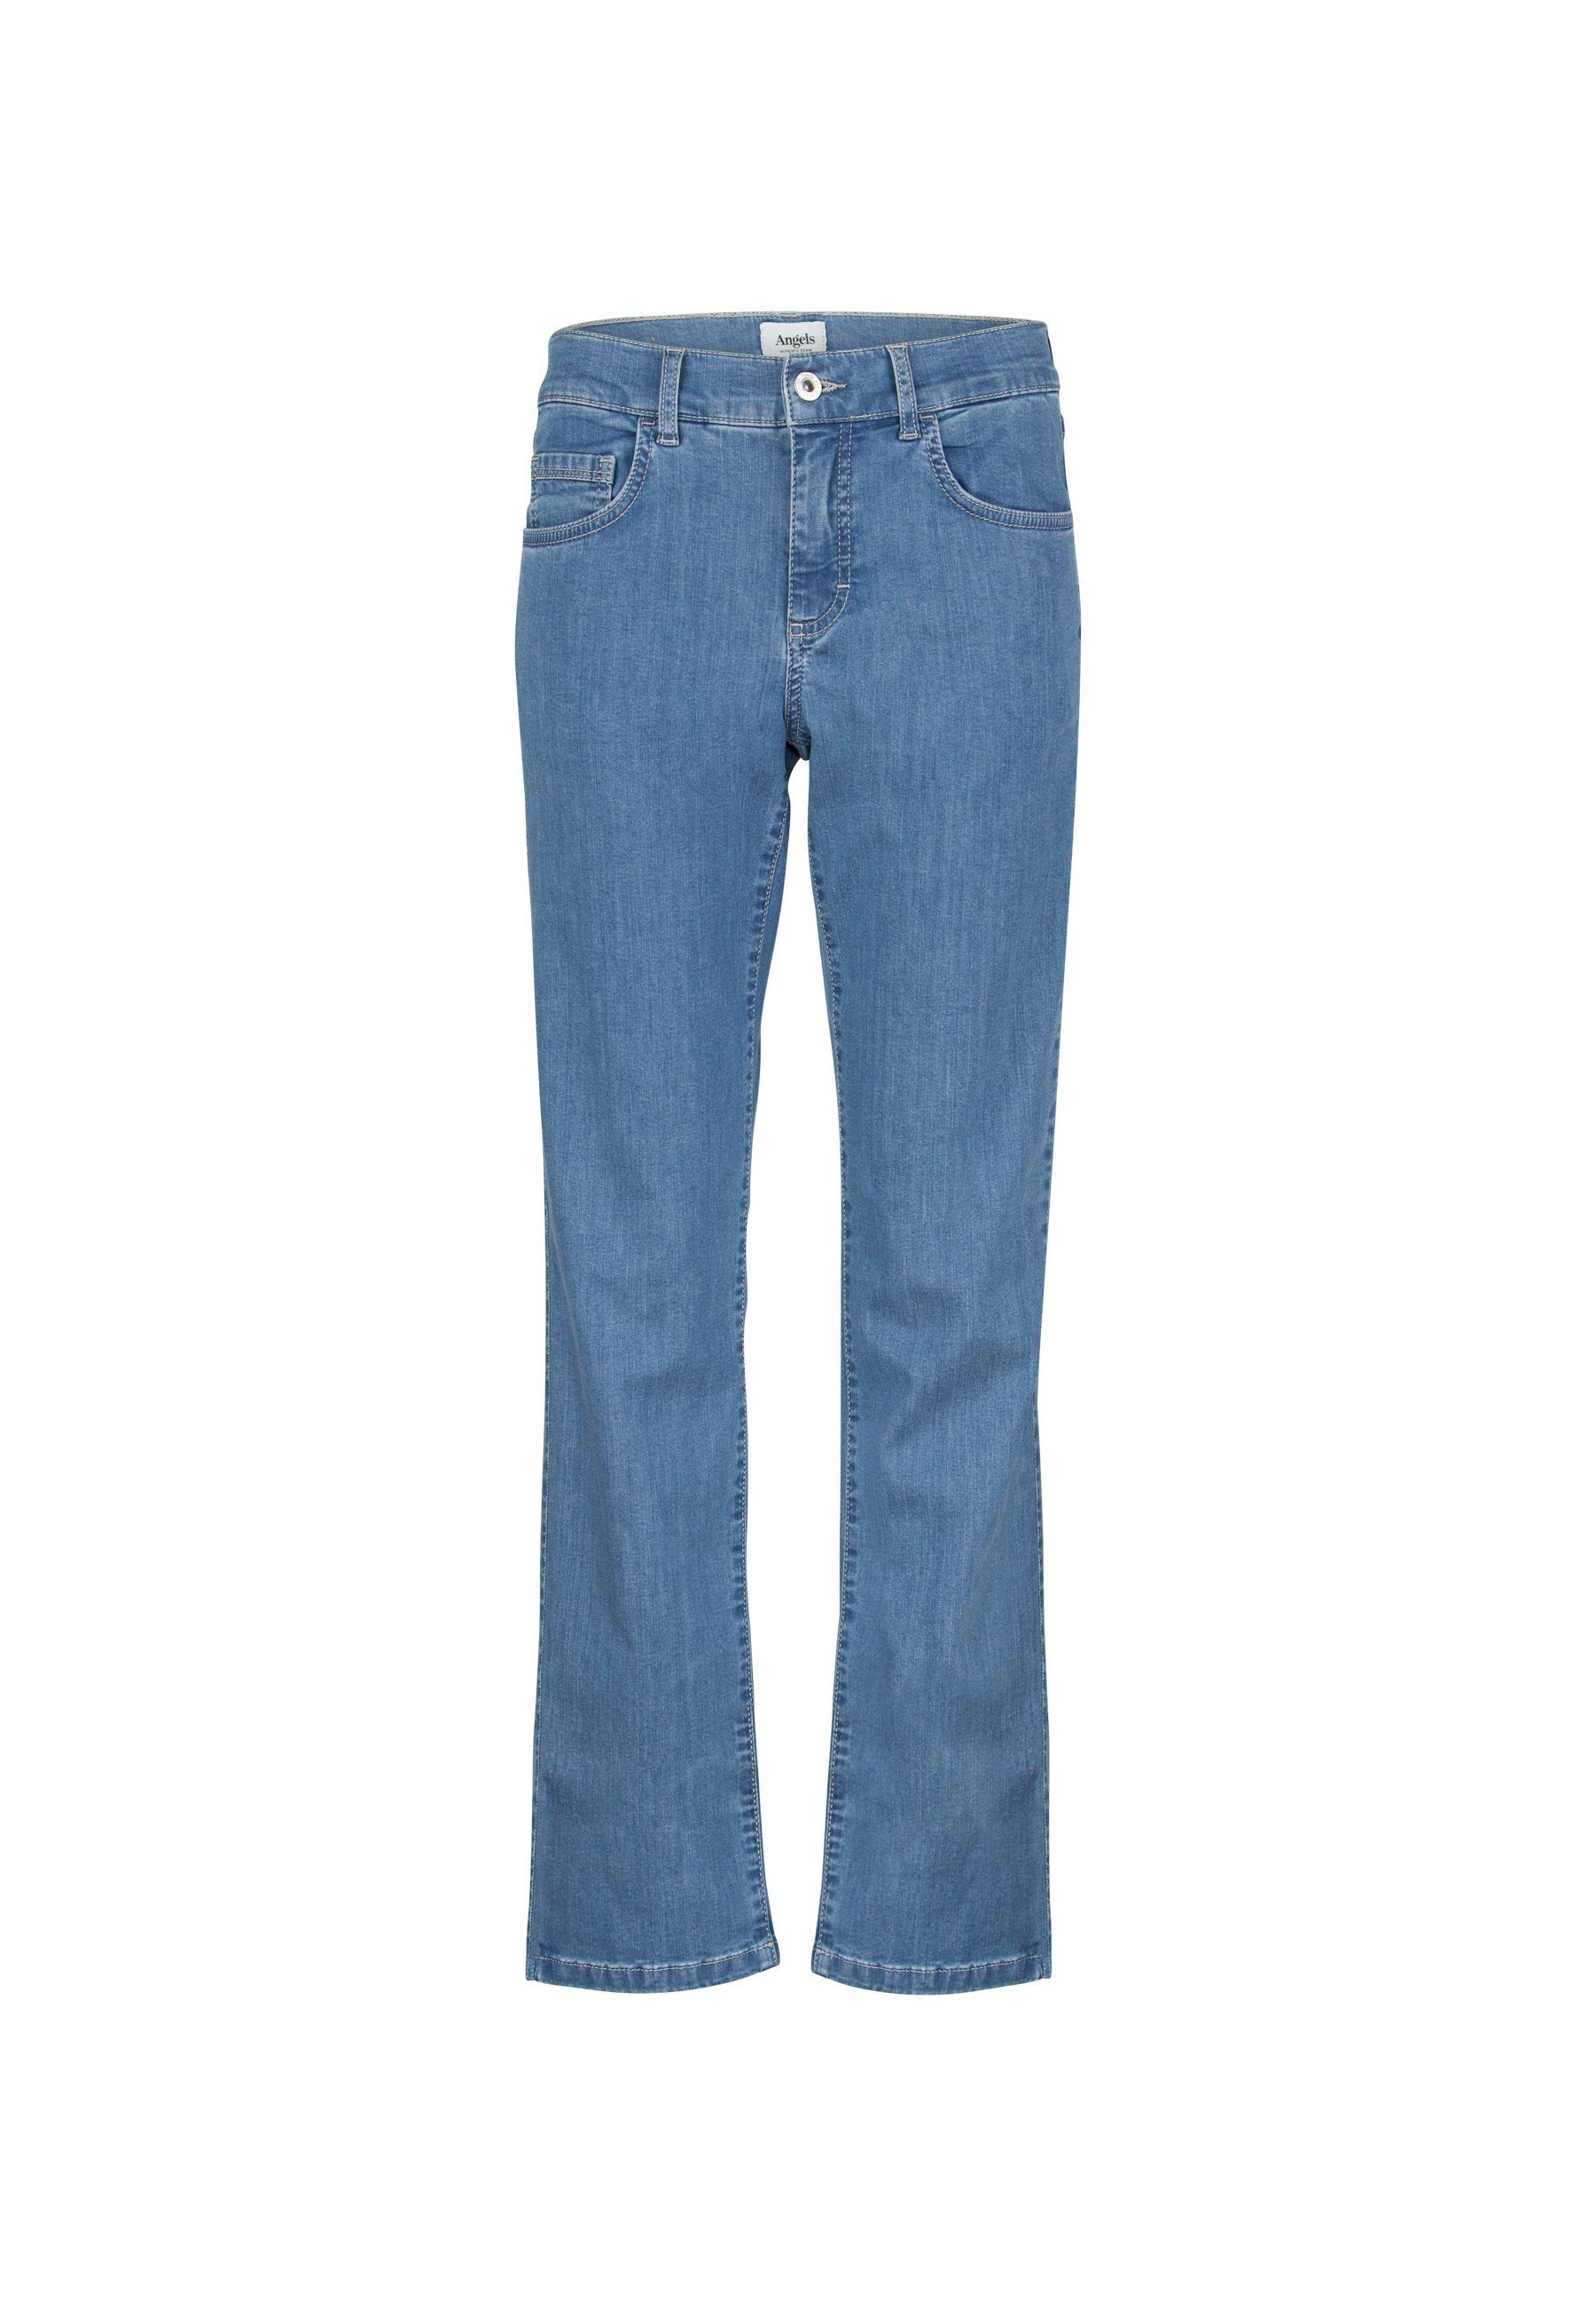 Jeans Dolly Label-Applikationen hellblau Bein ANGELS mit Straight-Jeans mit geradem